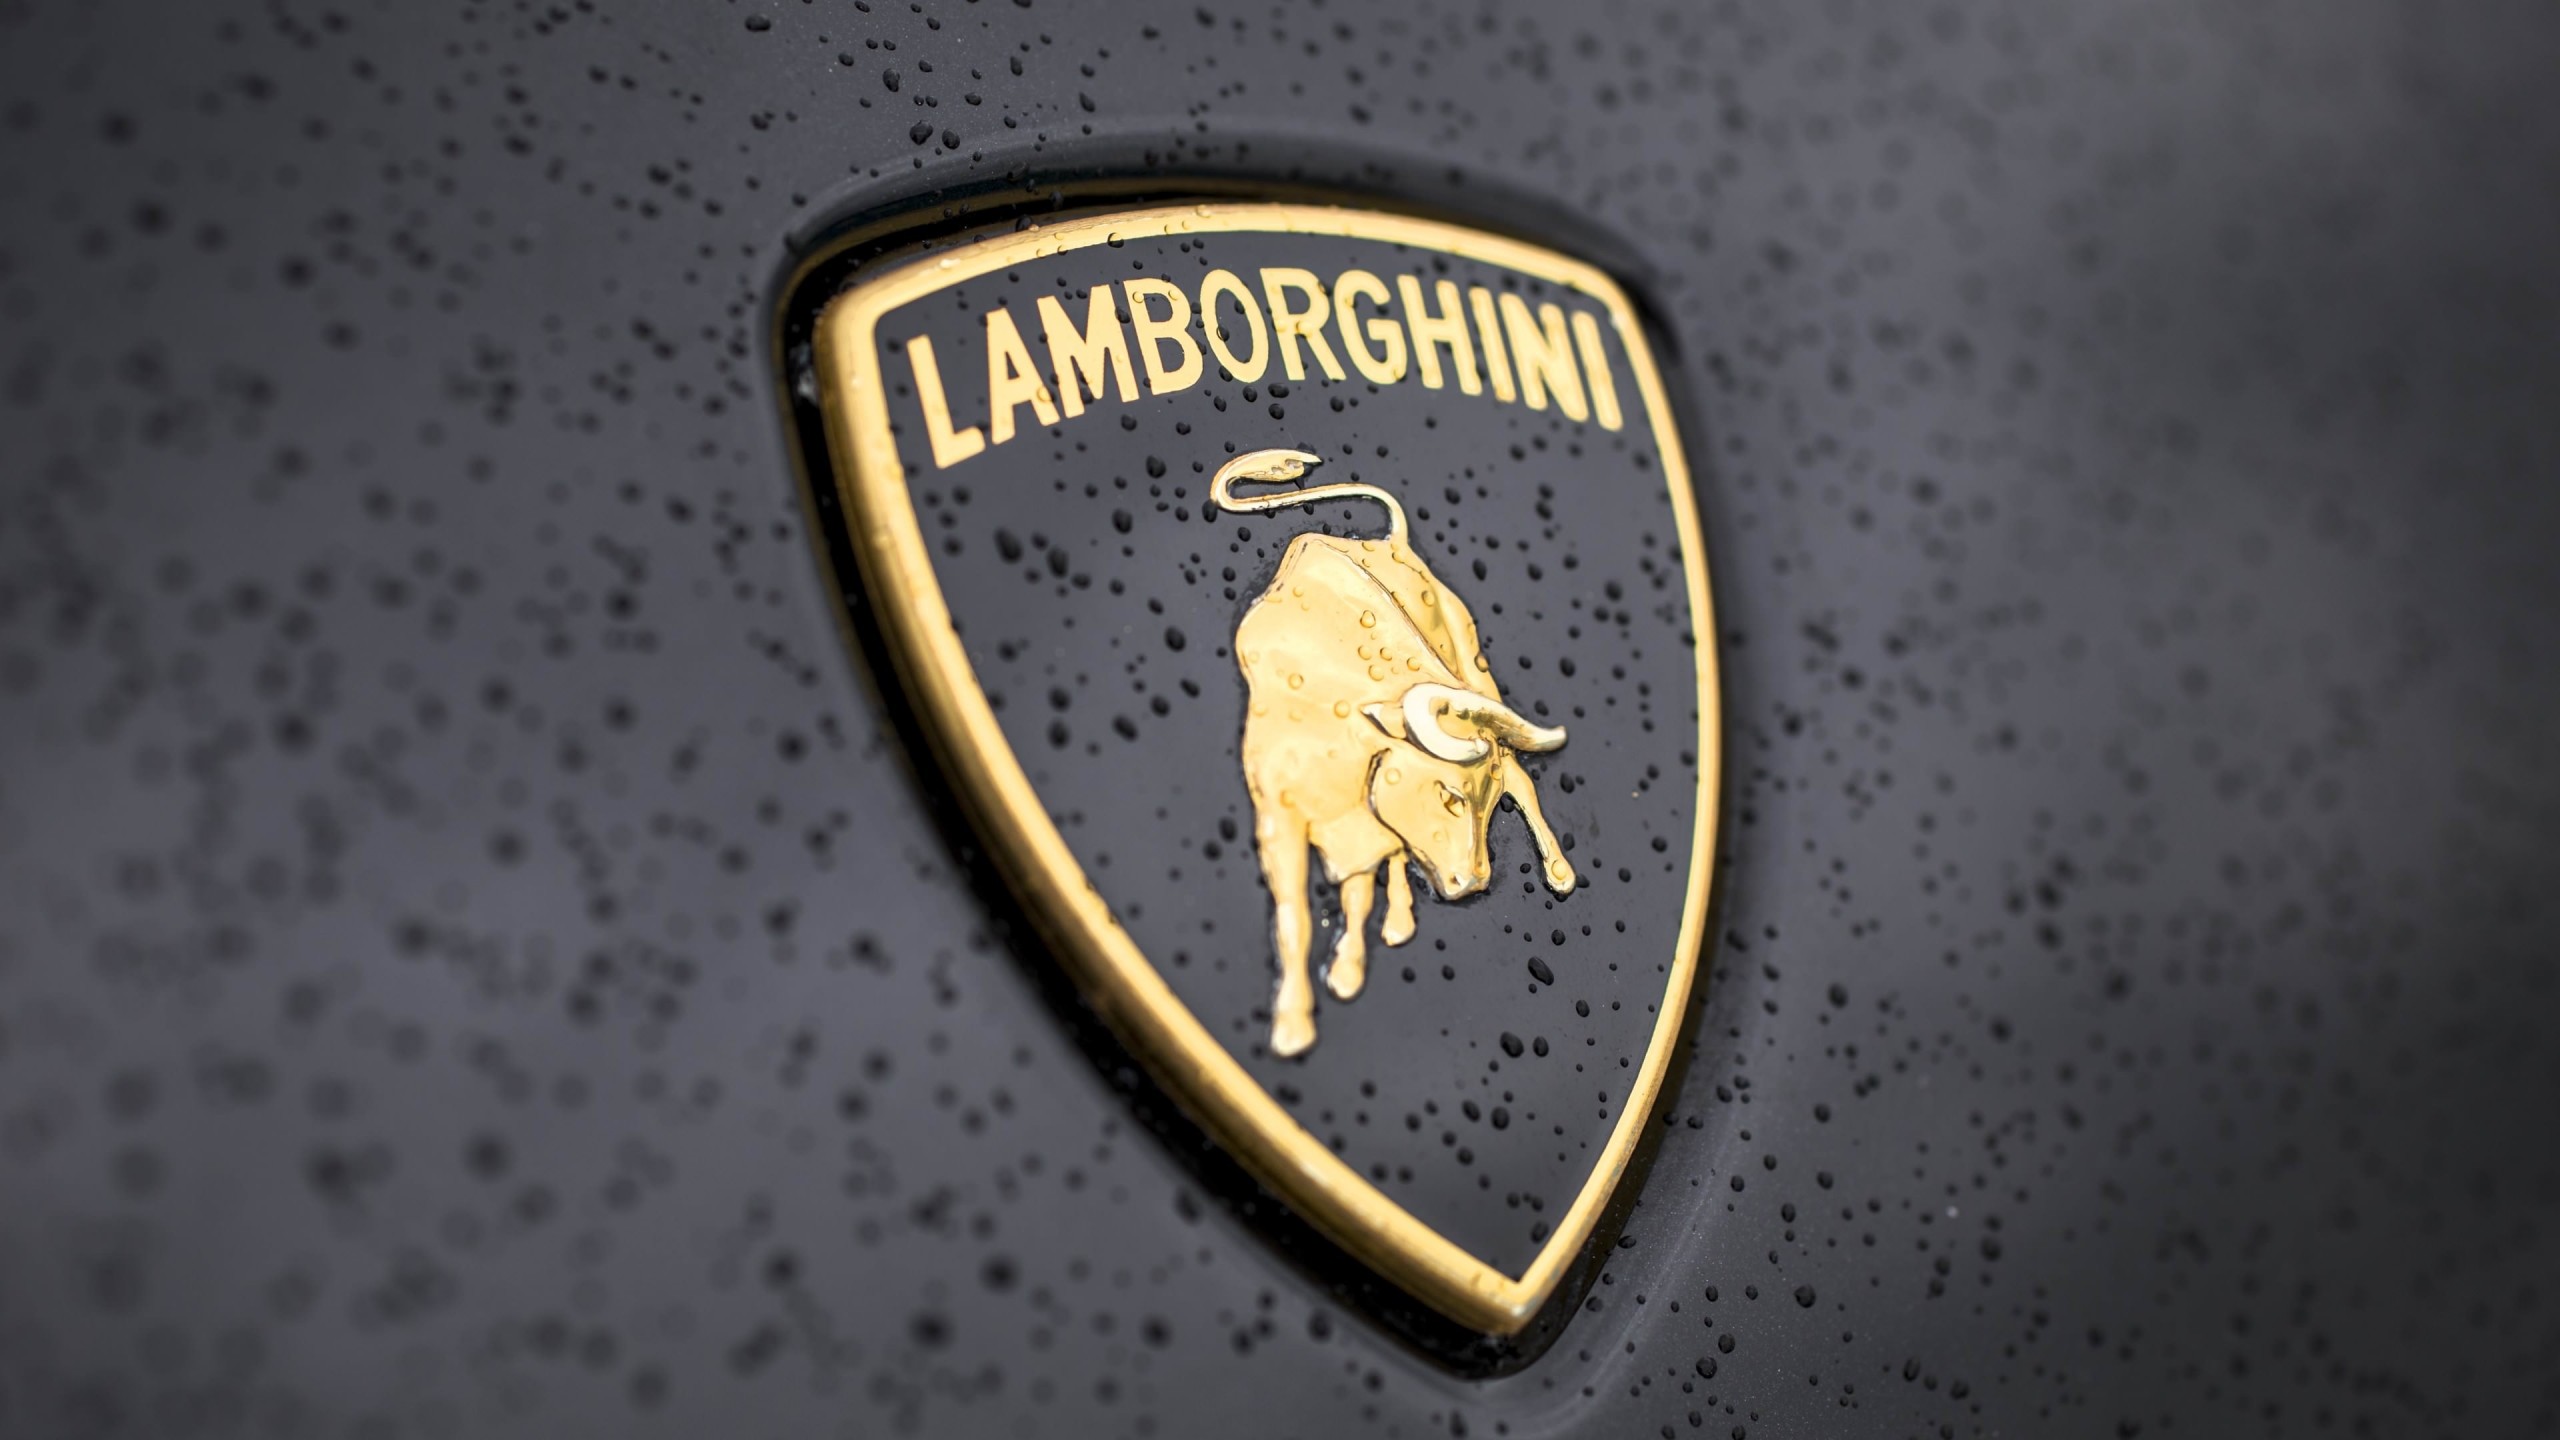 Lamborghini Logo Wallpaper for Social Media YouTube Channel Art